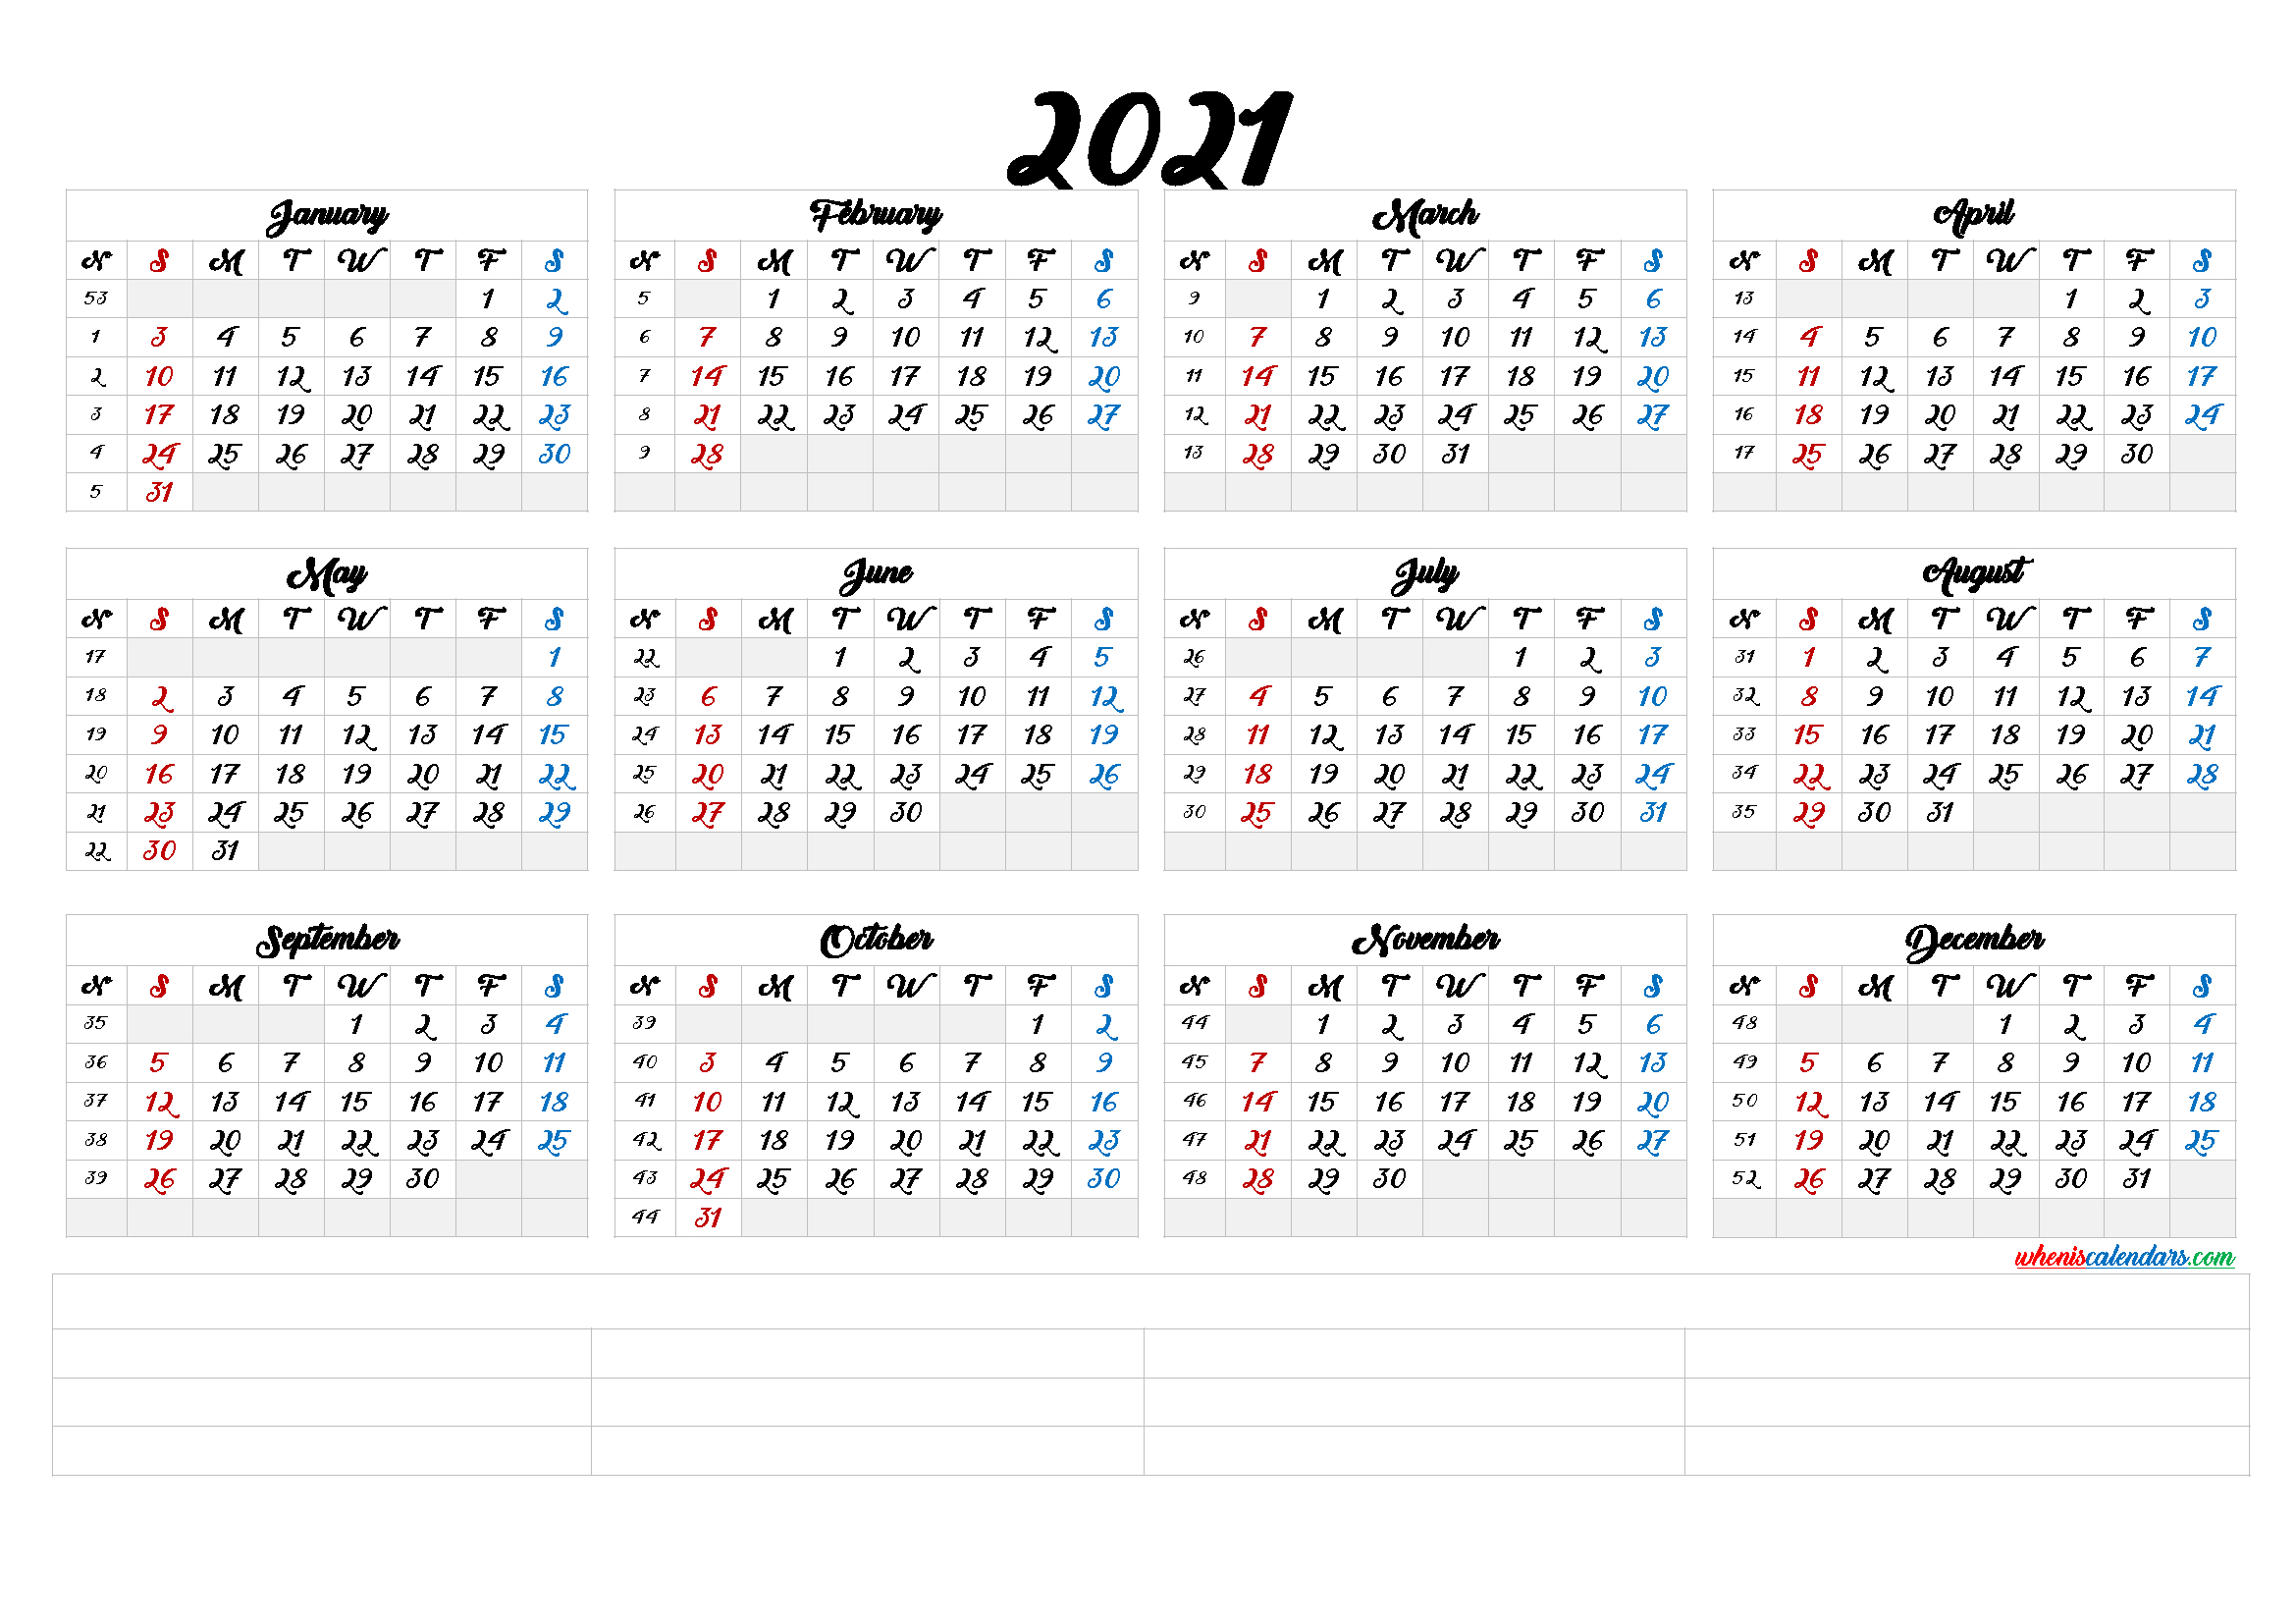 2021 Calendar With Week Number Printable Free : 2021